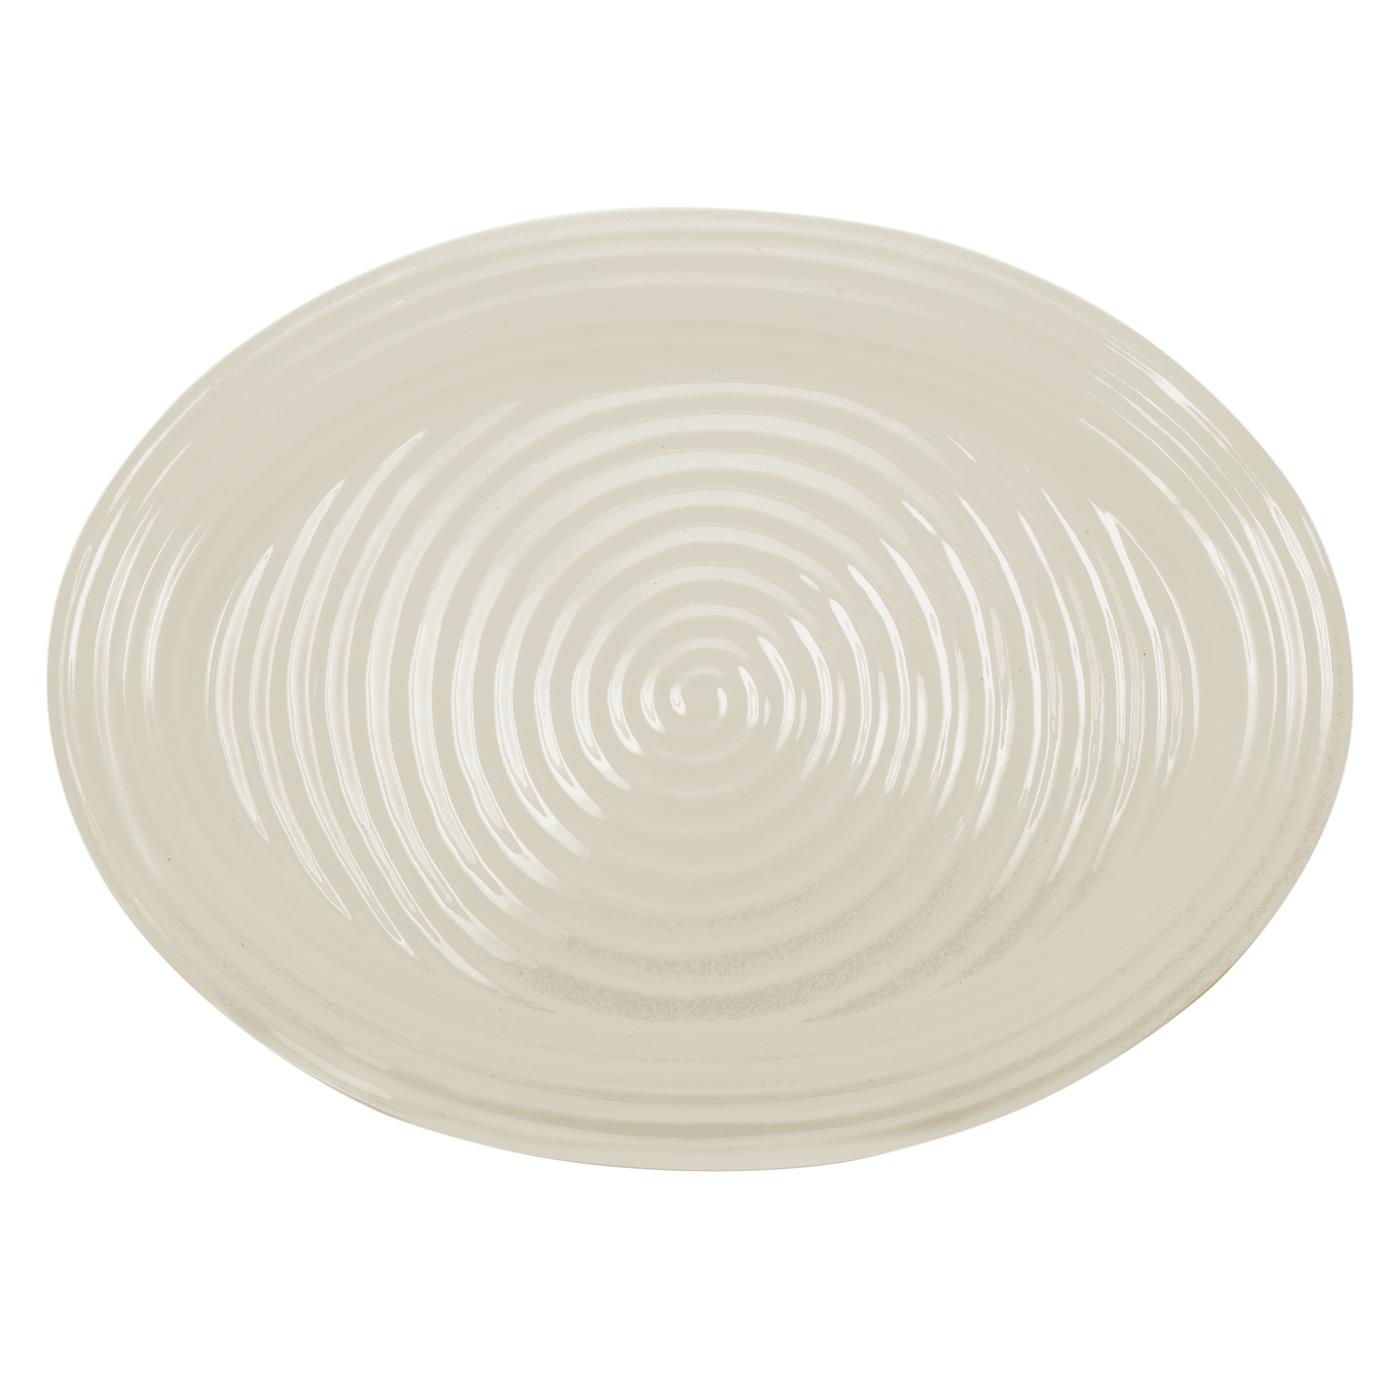 포트메리온 '소피 콘란' 미디움 오발 접시 Portmeirion Sophie Conran Pebble Medium Oval Platter